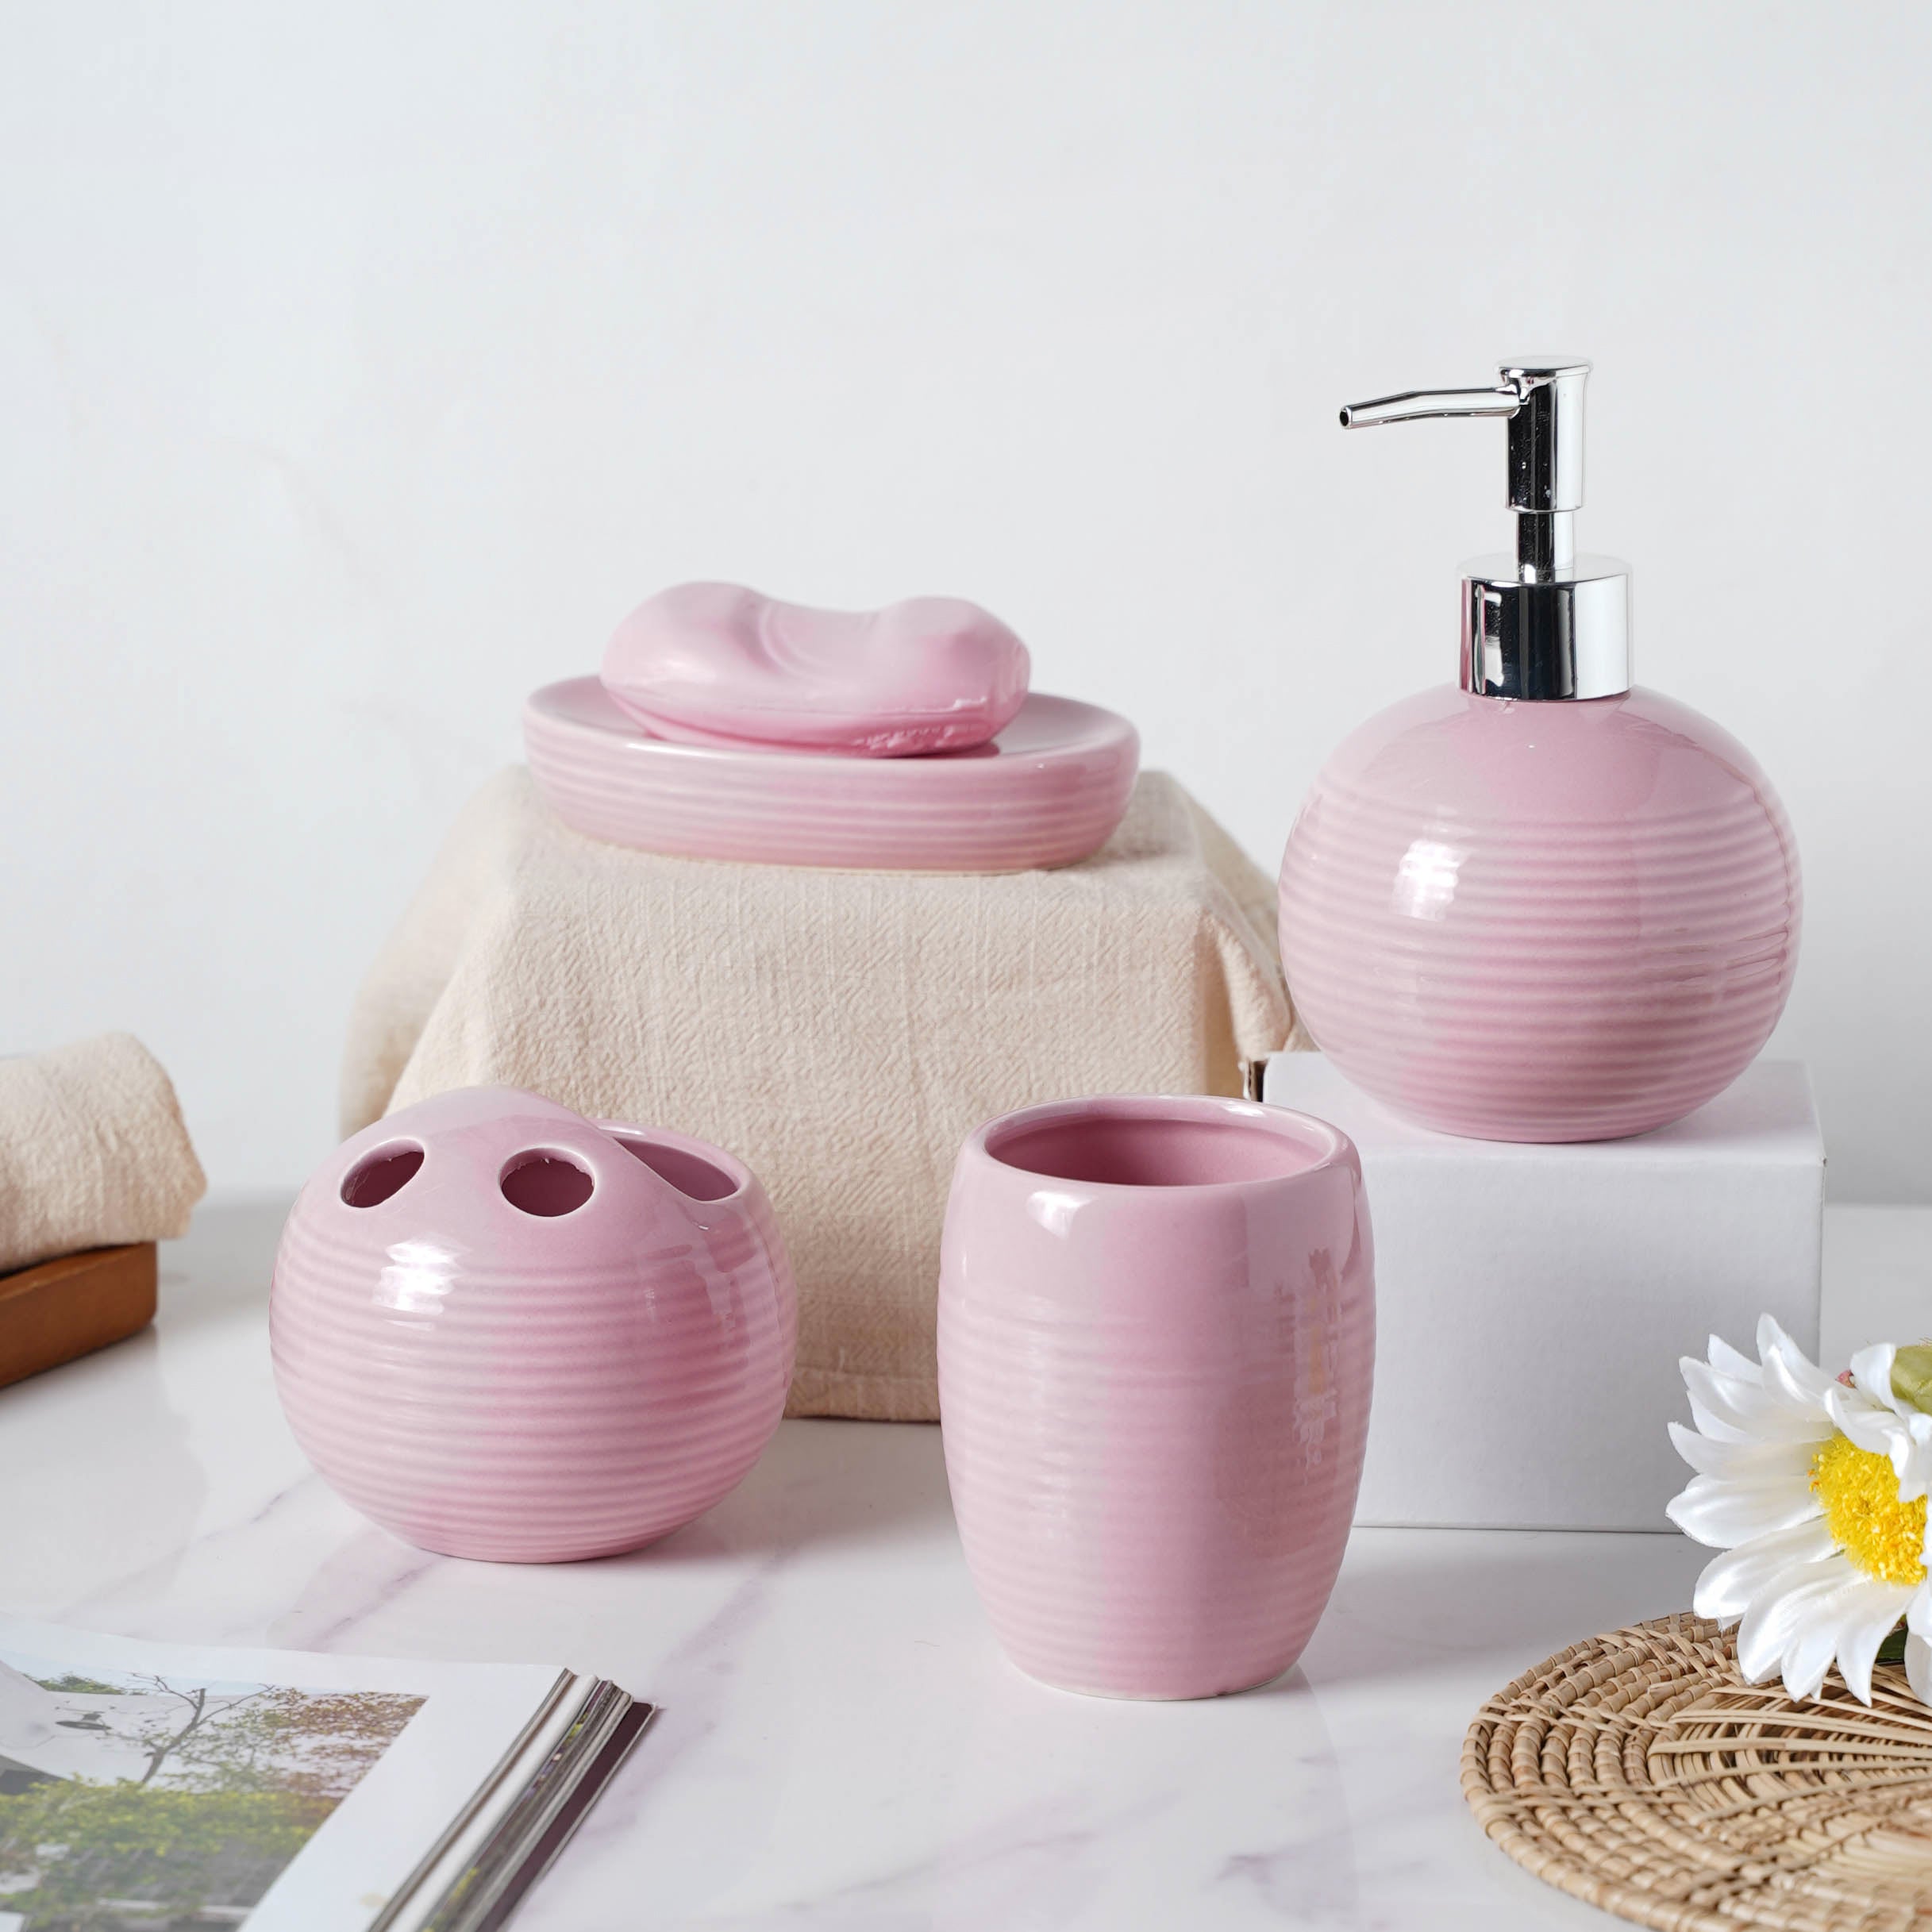 Indbildsk Myre nudler Complete Set of Ceramic Bath Accessories Pink